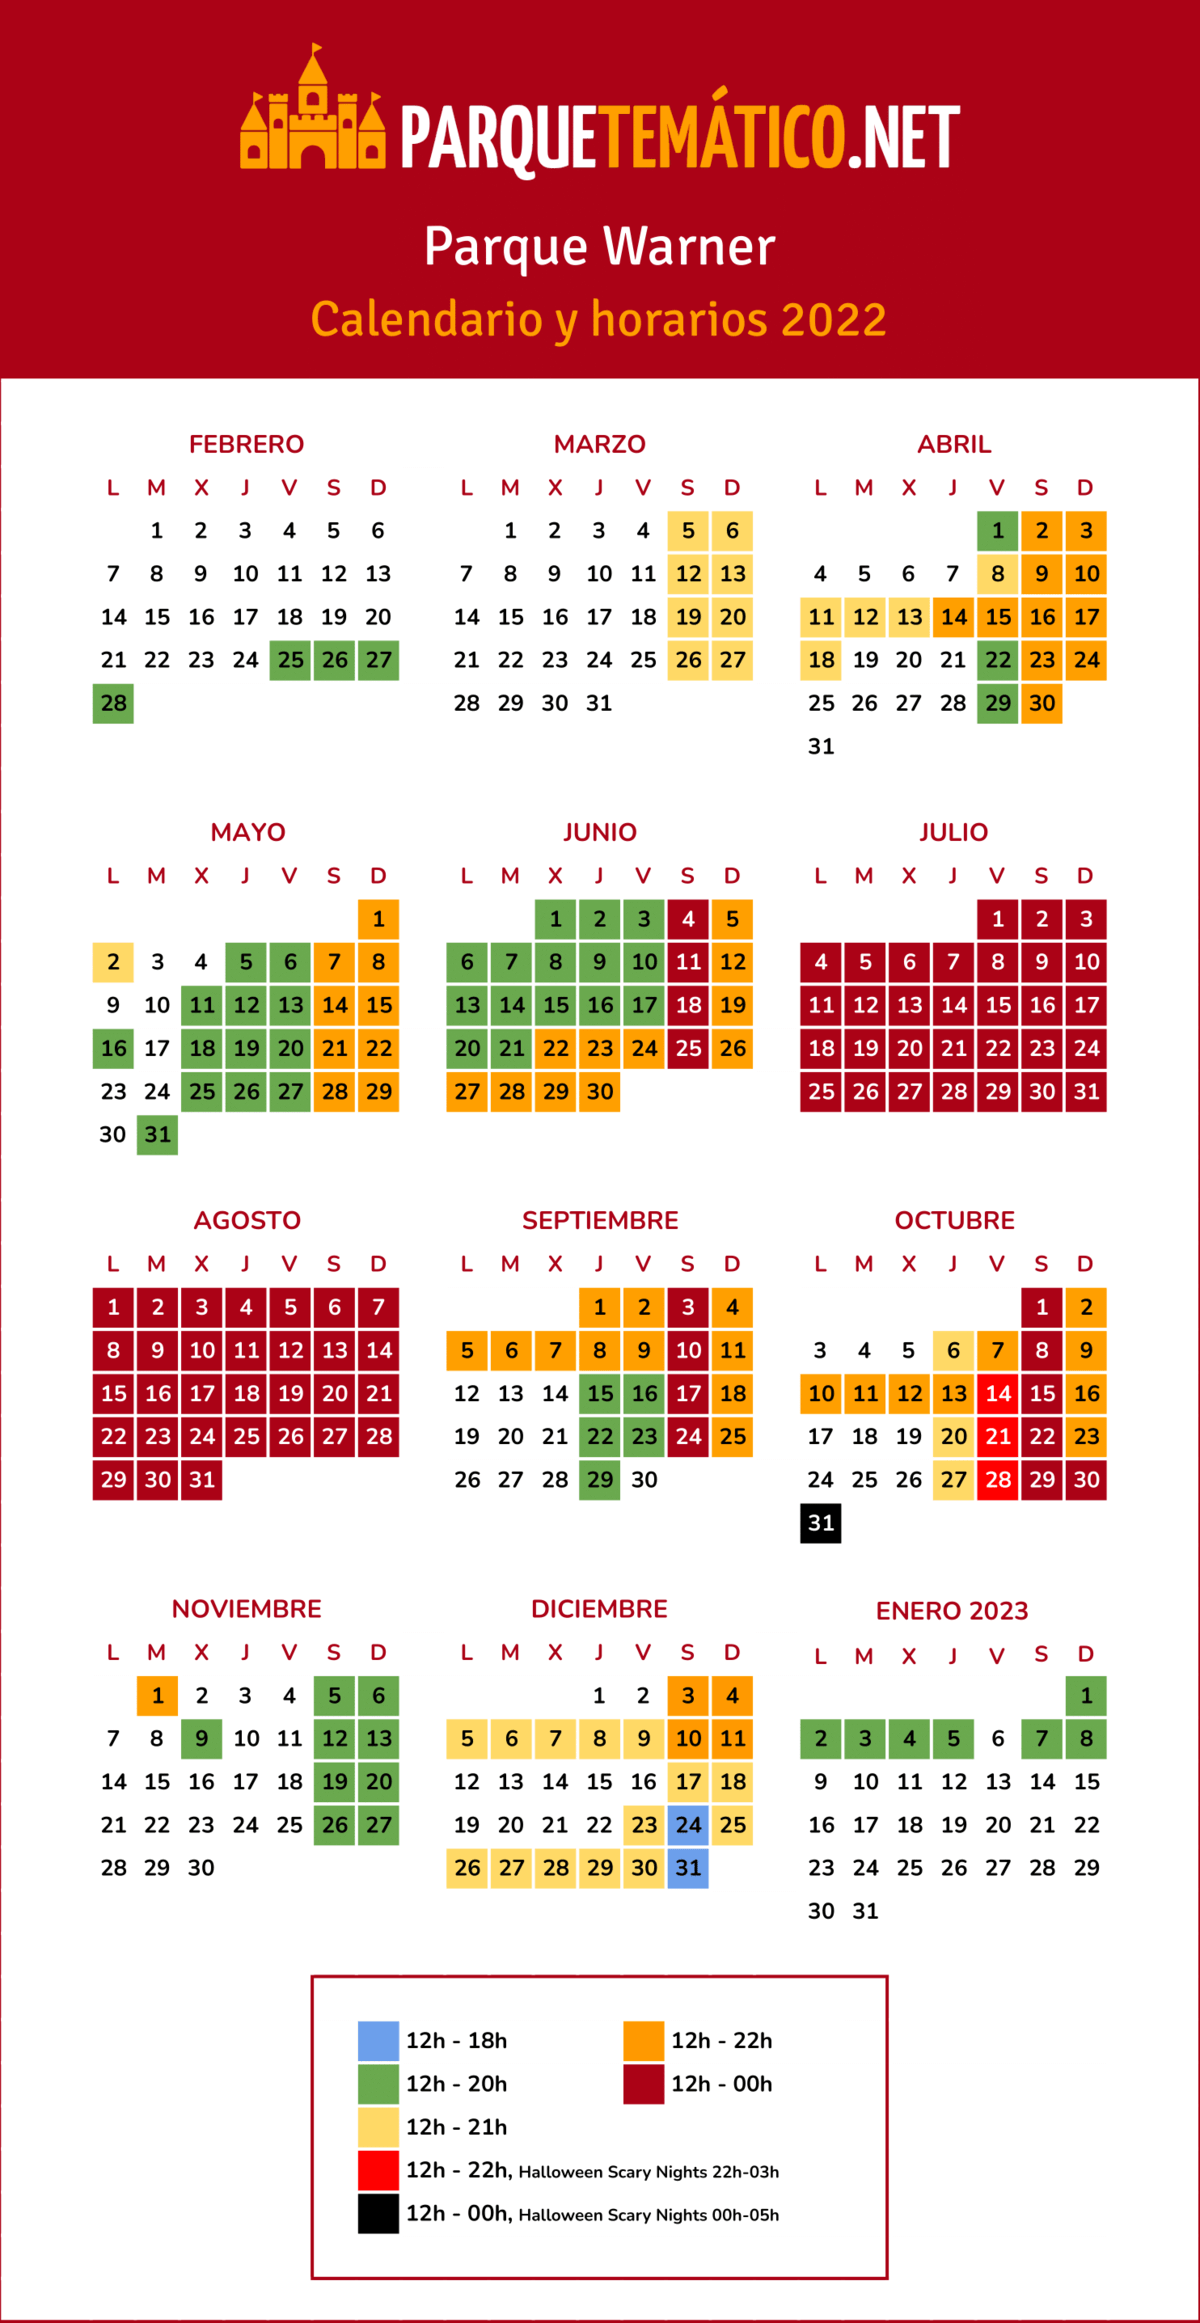 Calendario y Horarios Parque Warner 2022